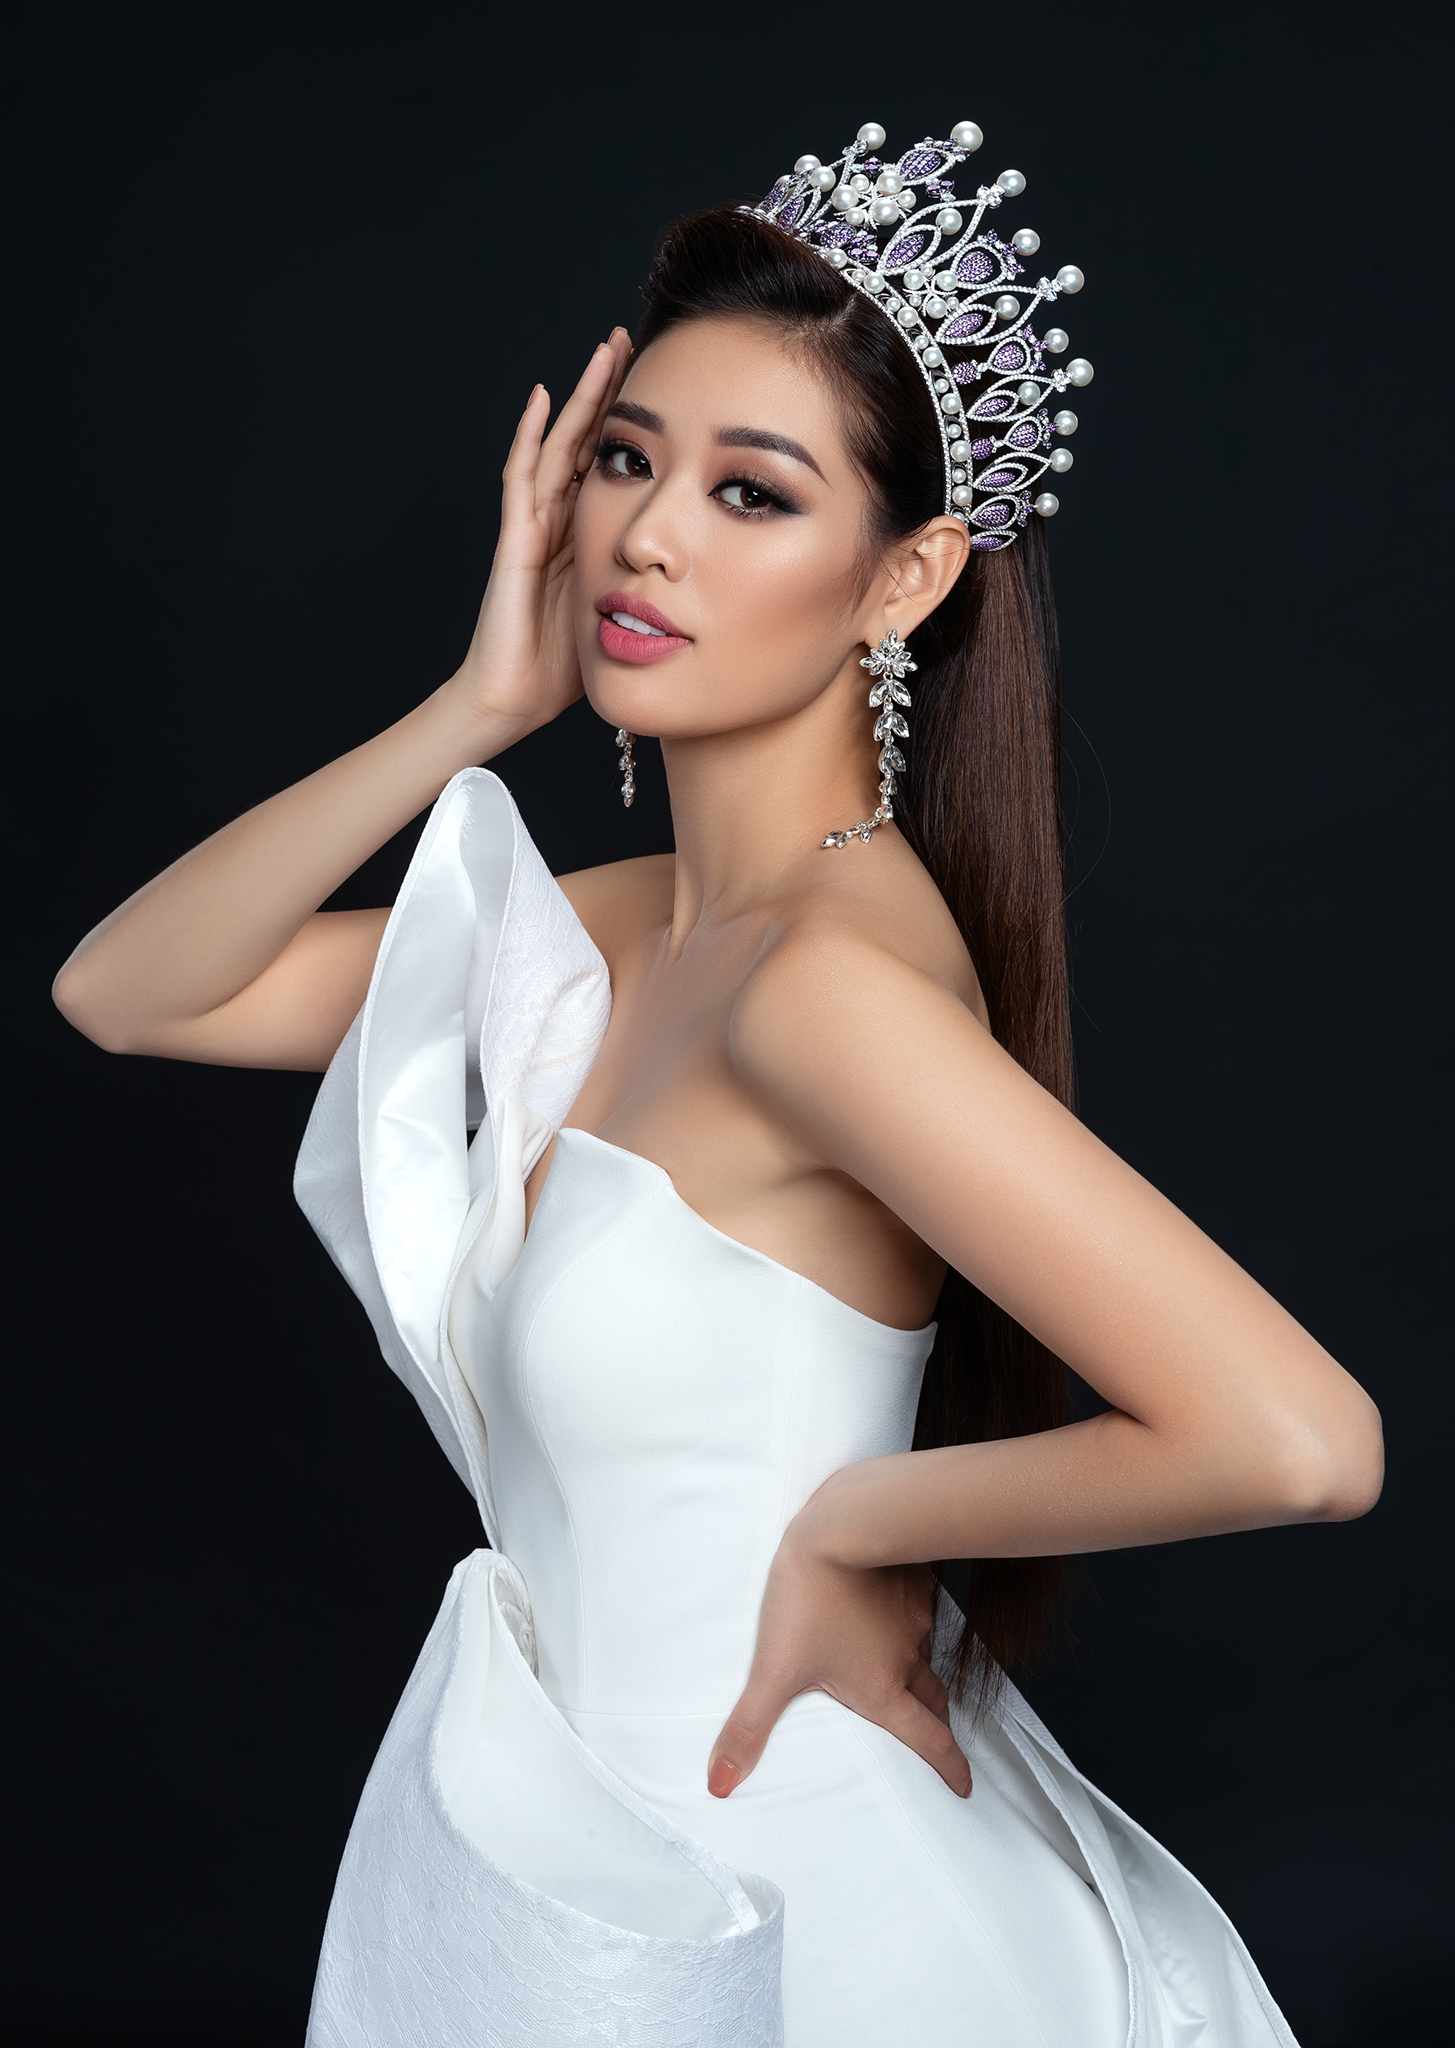 Hoa hậu Khánh Vân đẹp xuất sắc - Báo Người lao động